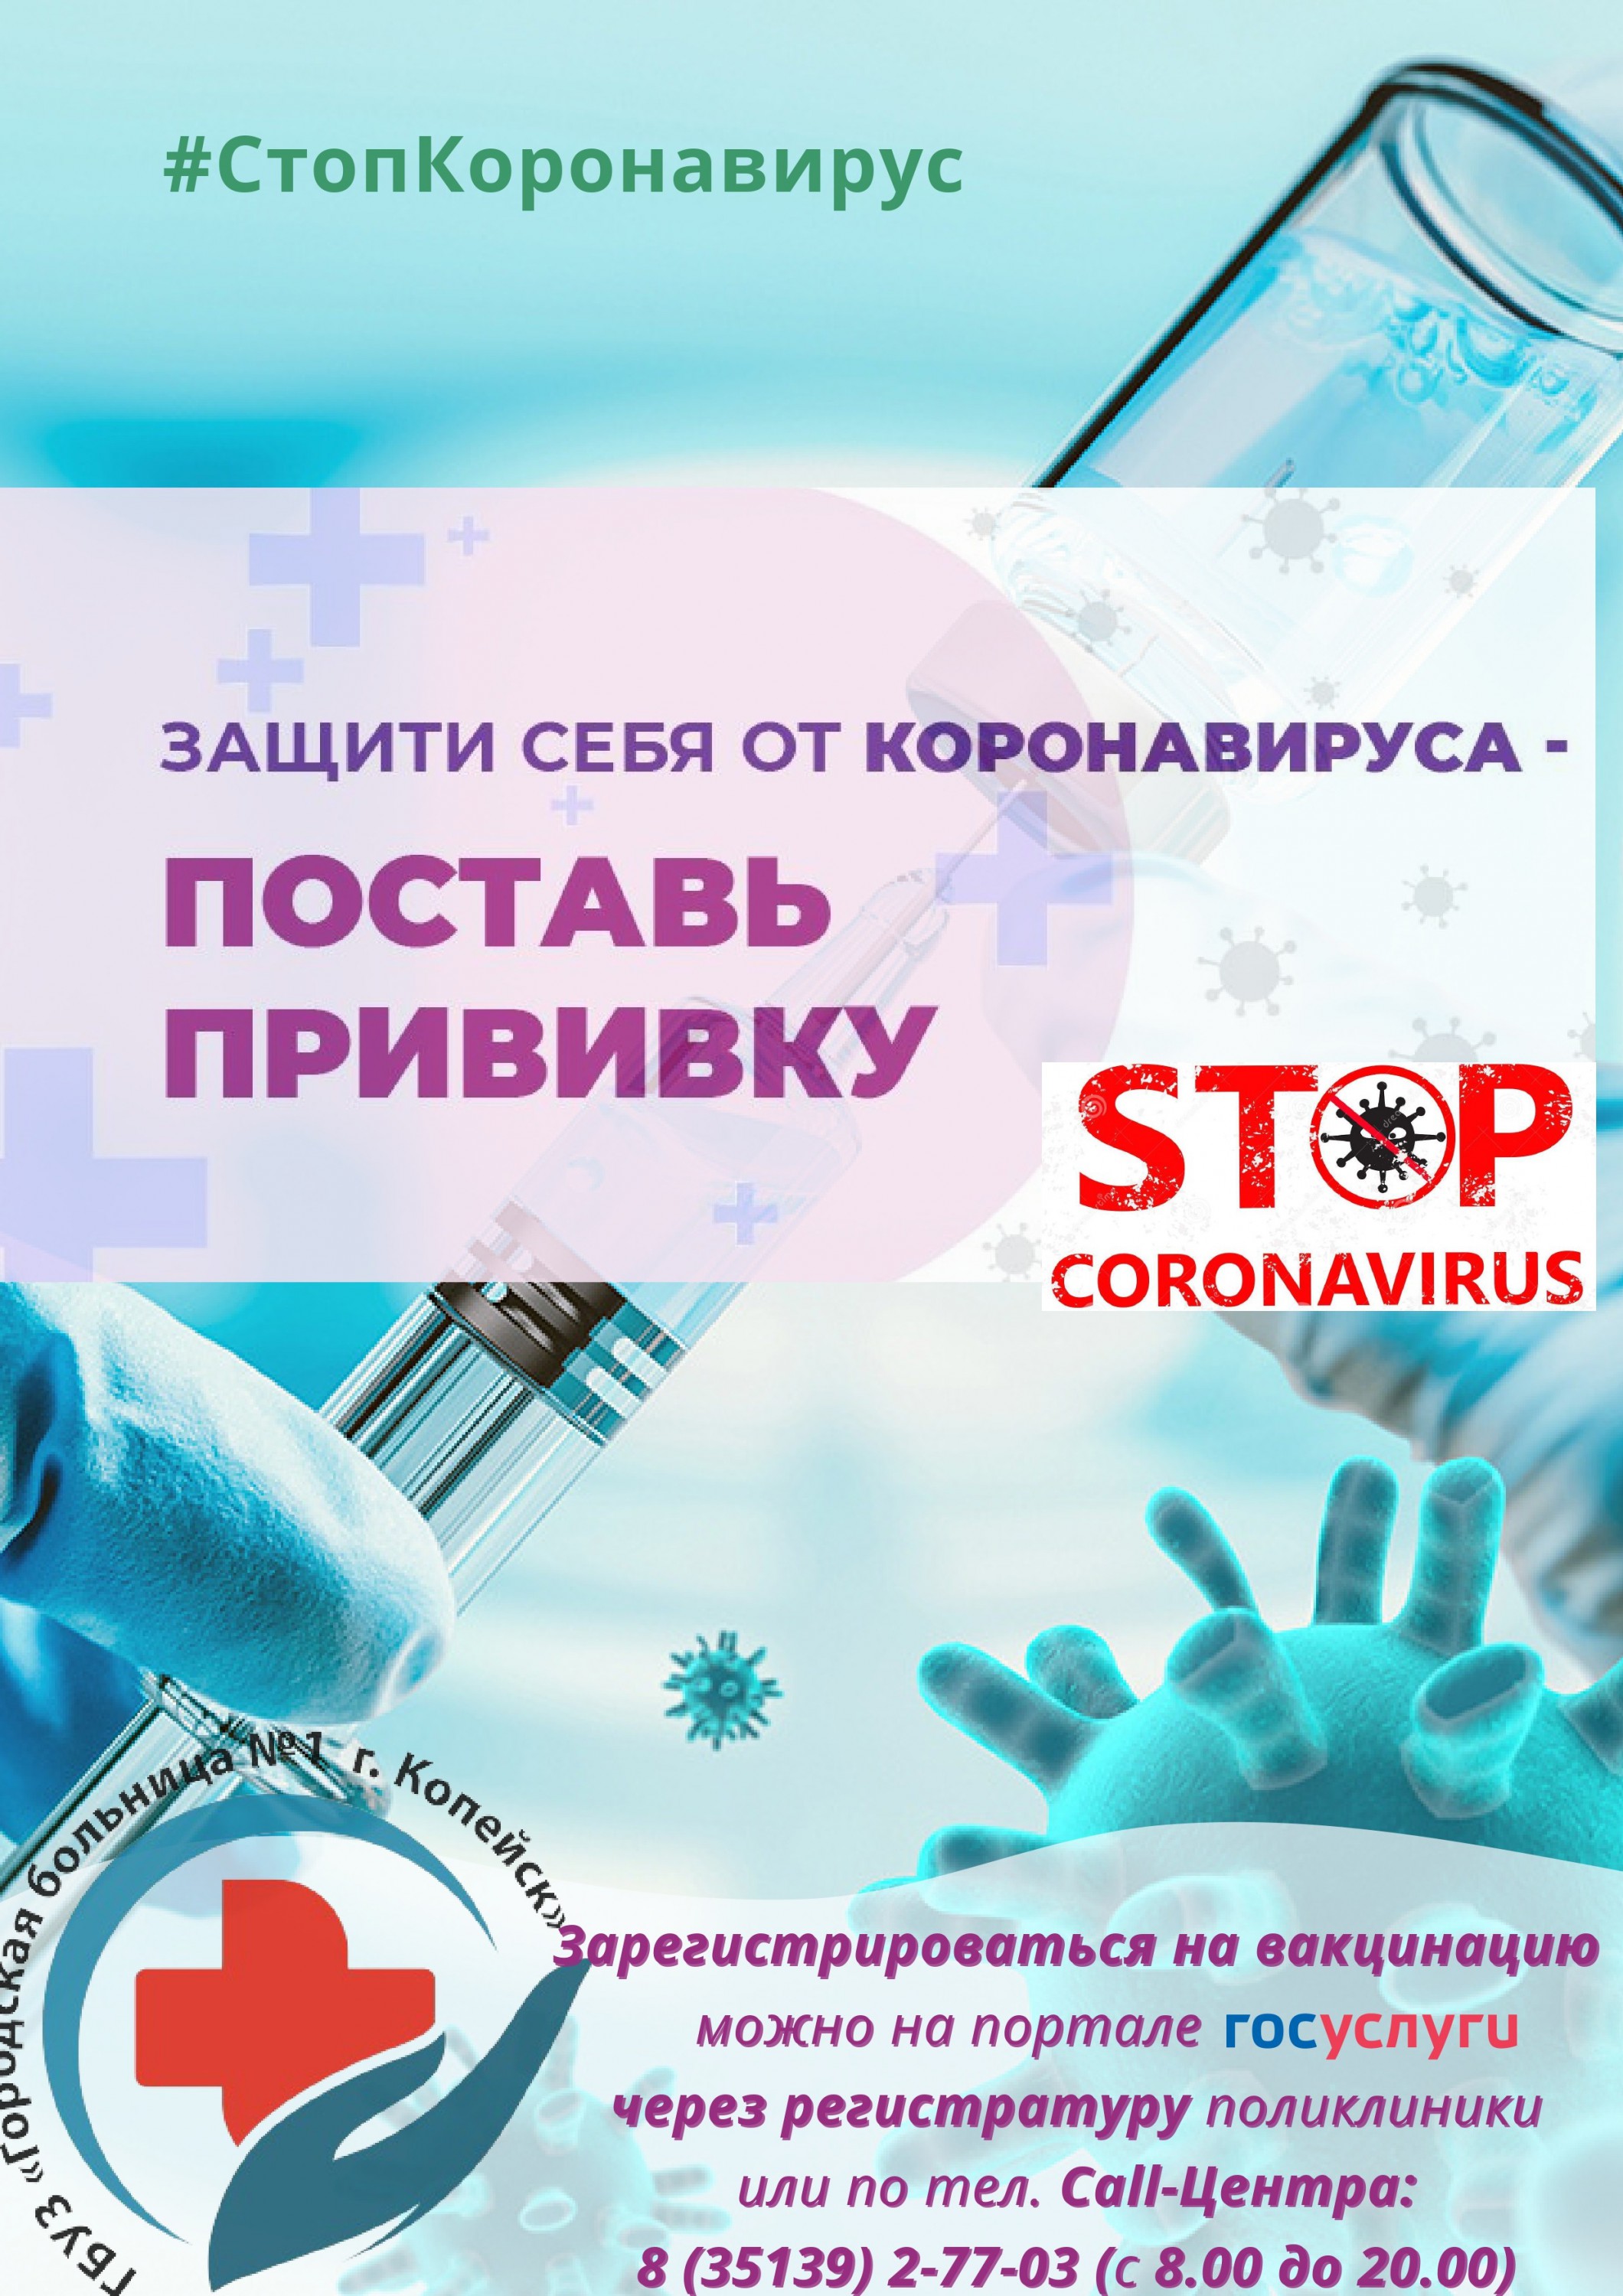 Информация о необходимости проведения вакцинации против новой коронавирусной инфекции COVID-19